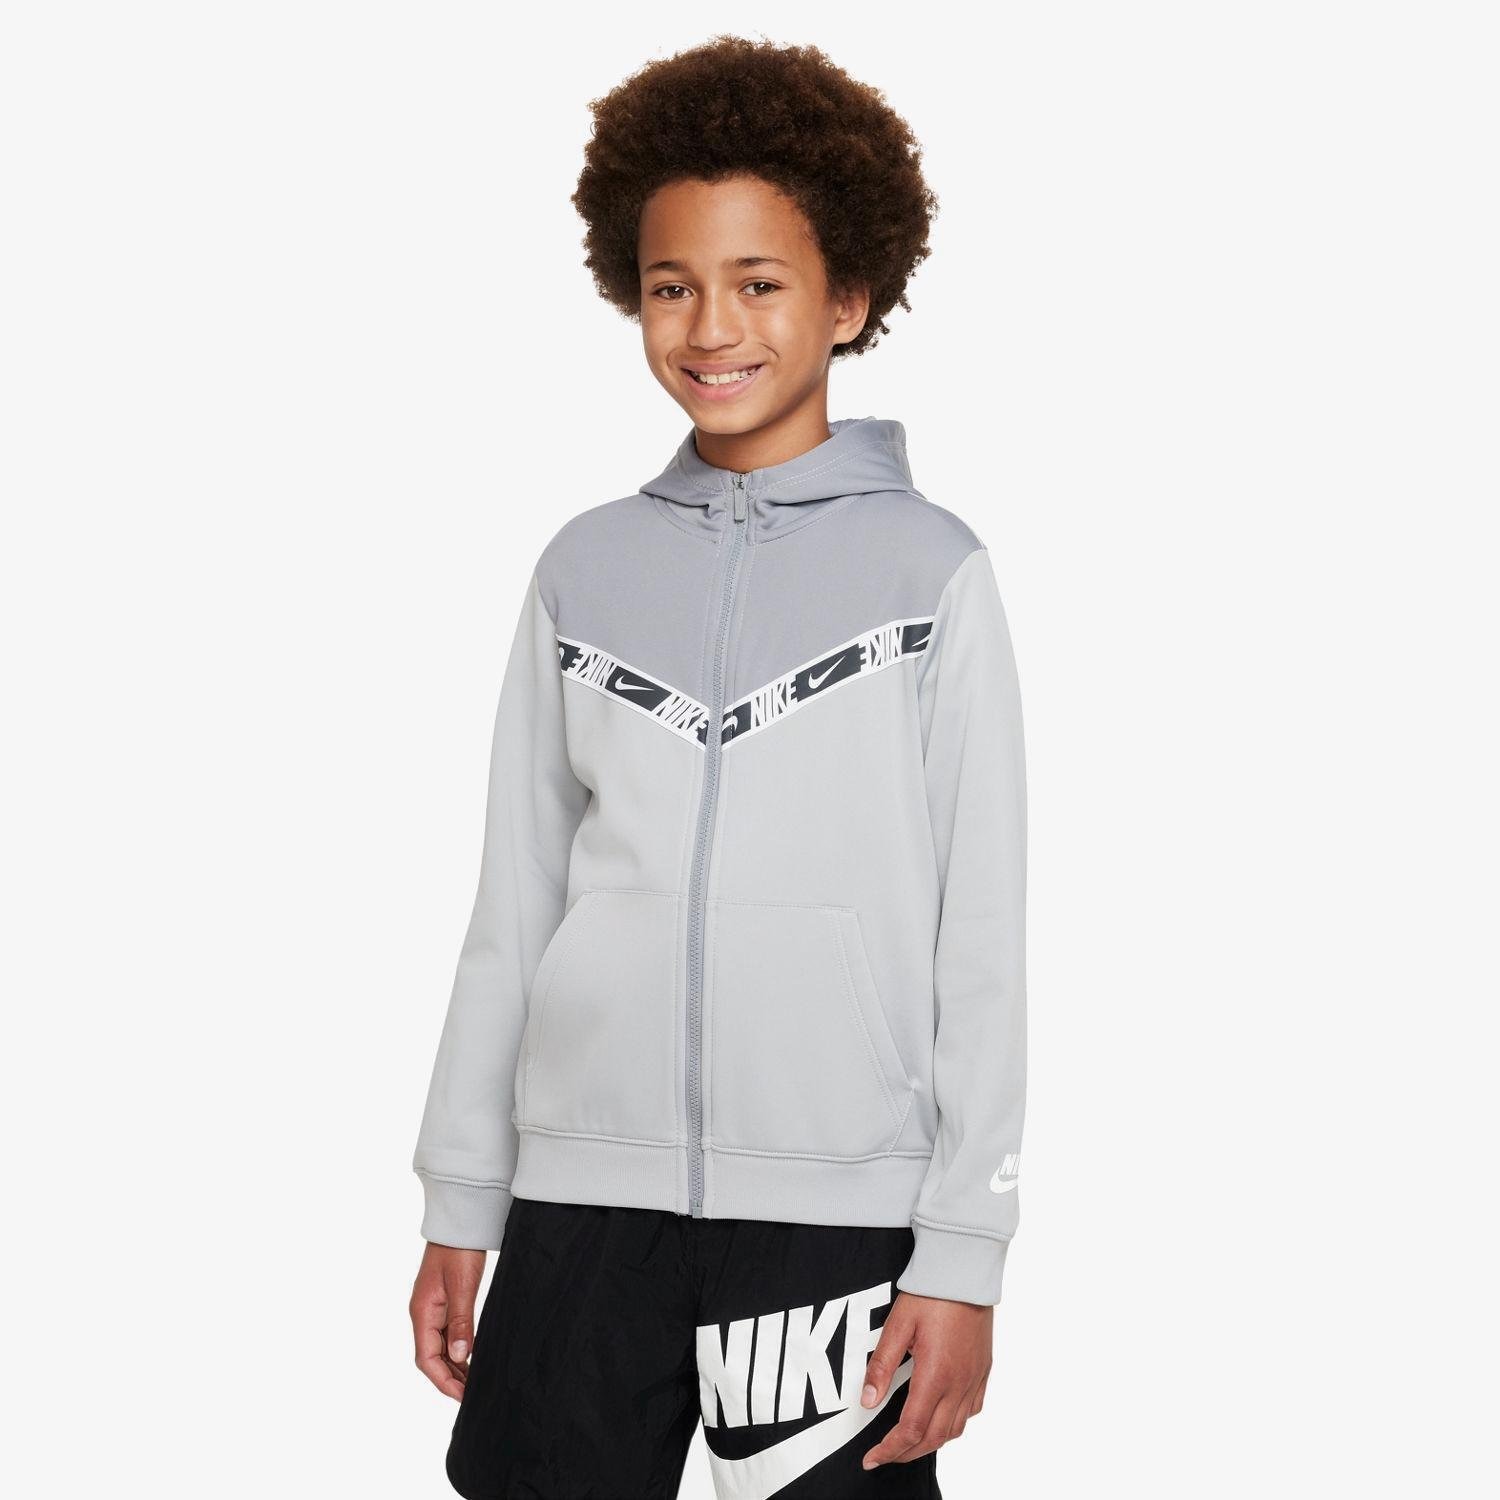 Nike Nike vest grijs kinderen kinderen